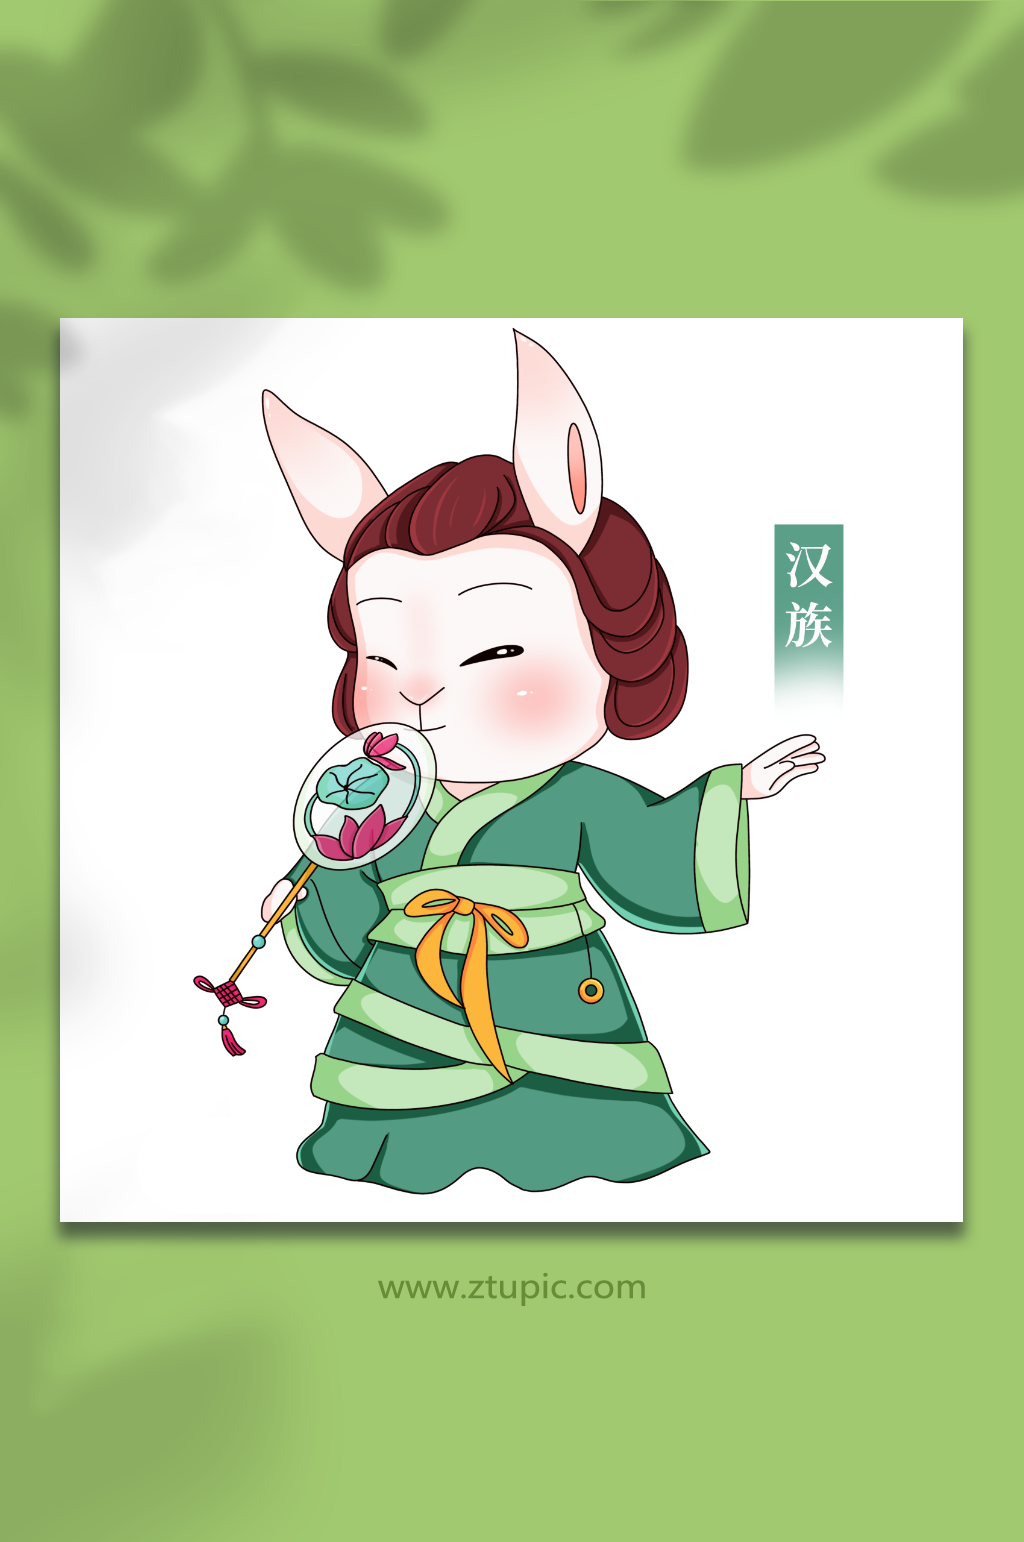 汉族卡通兔年少数民族人物插画